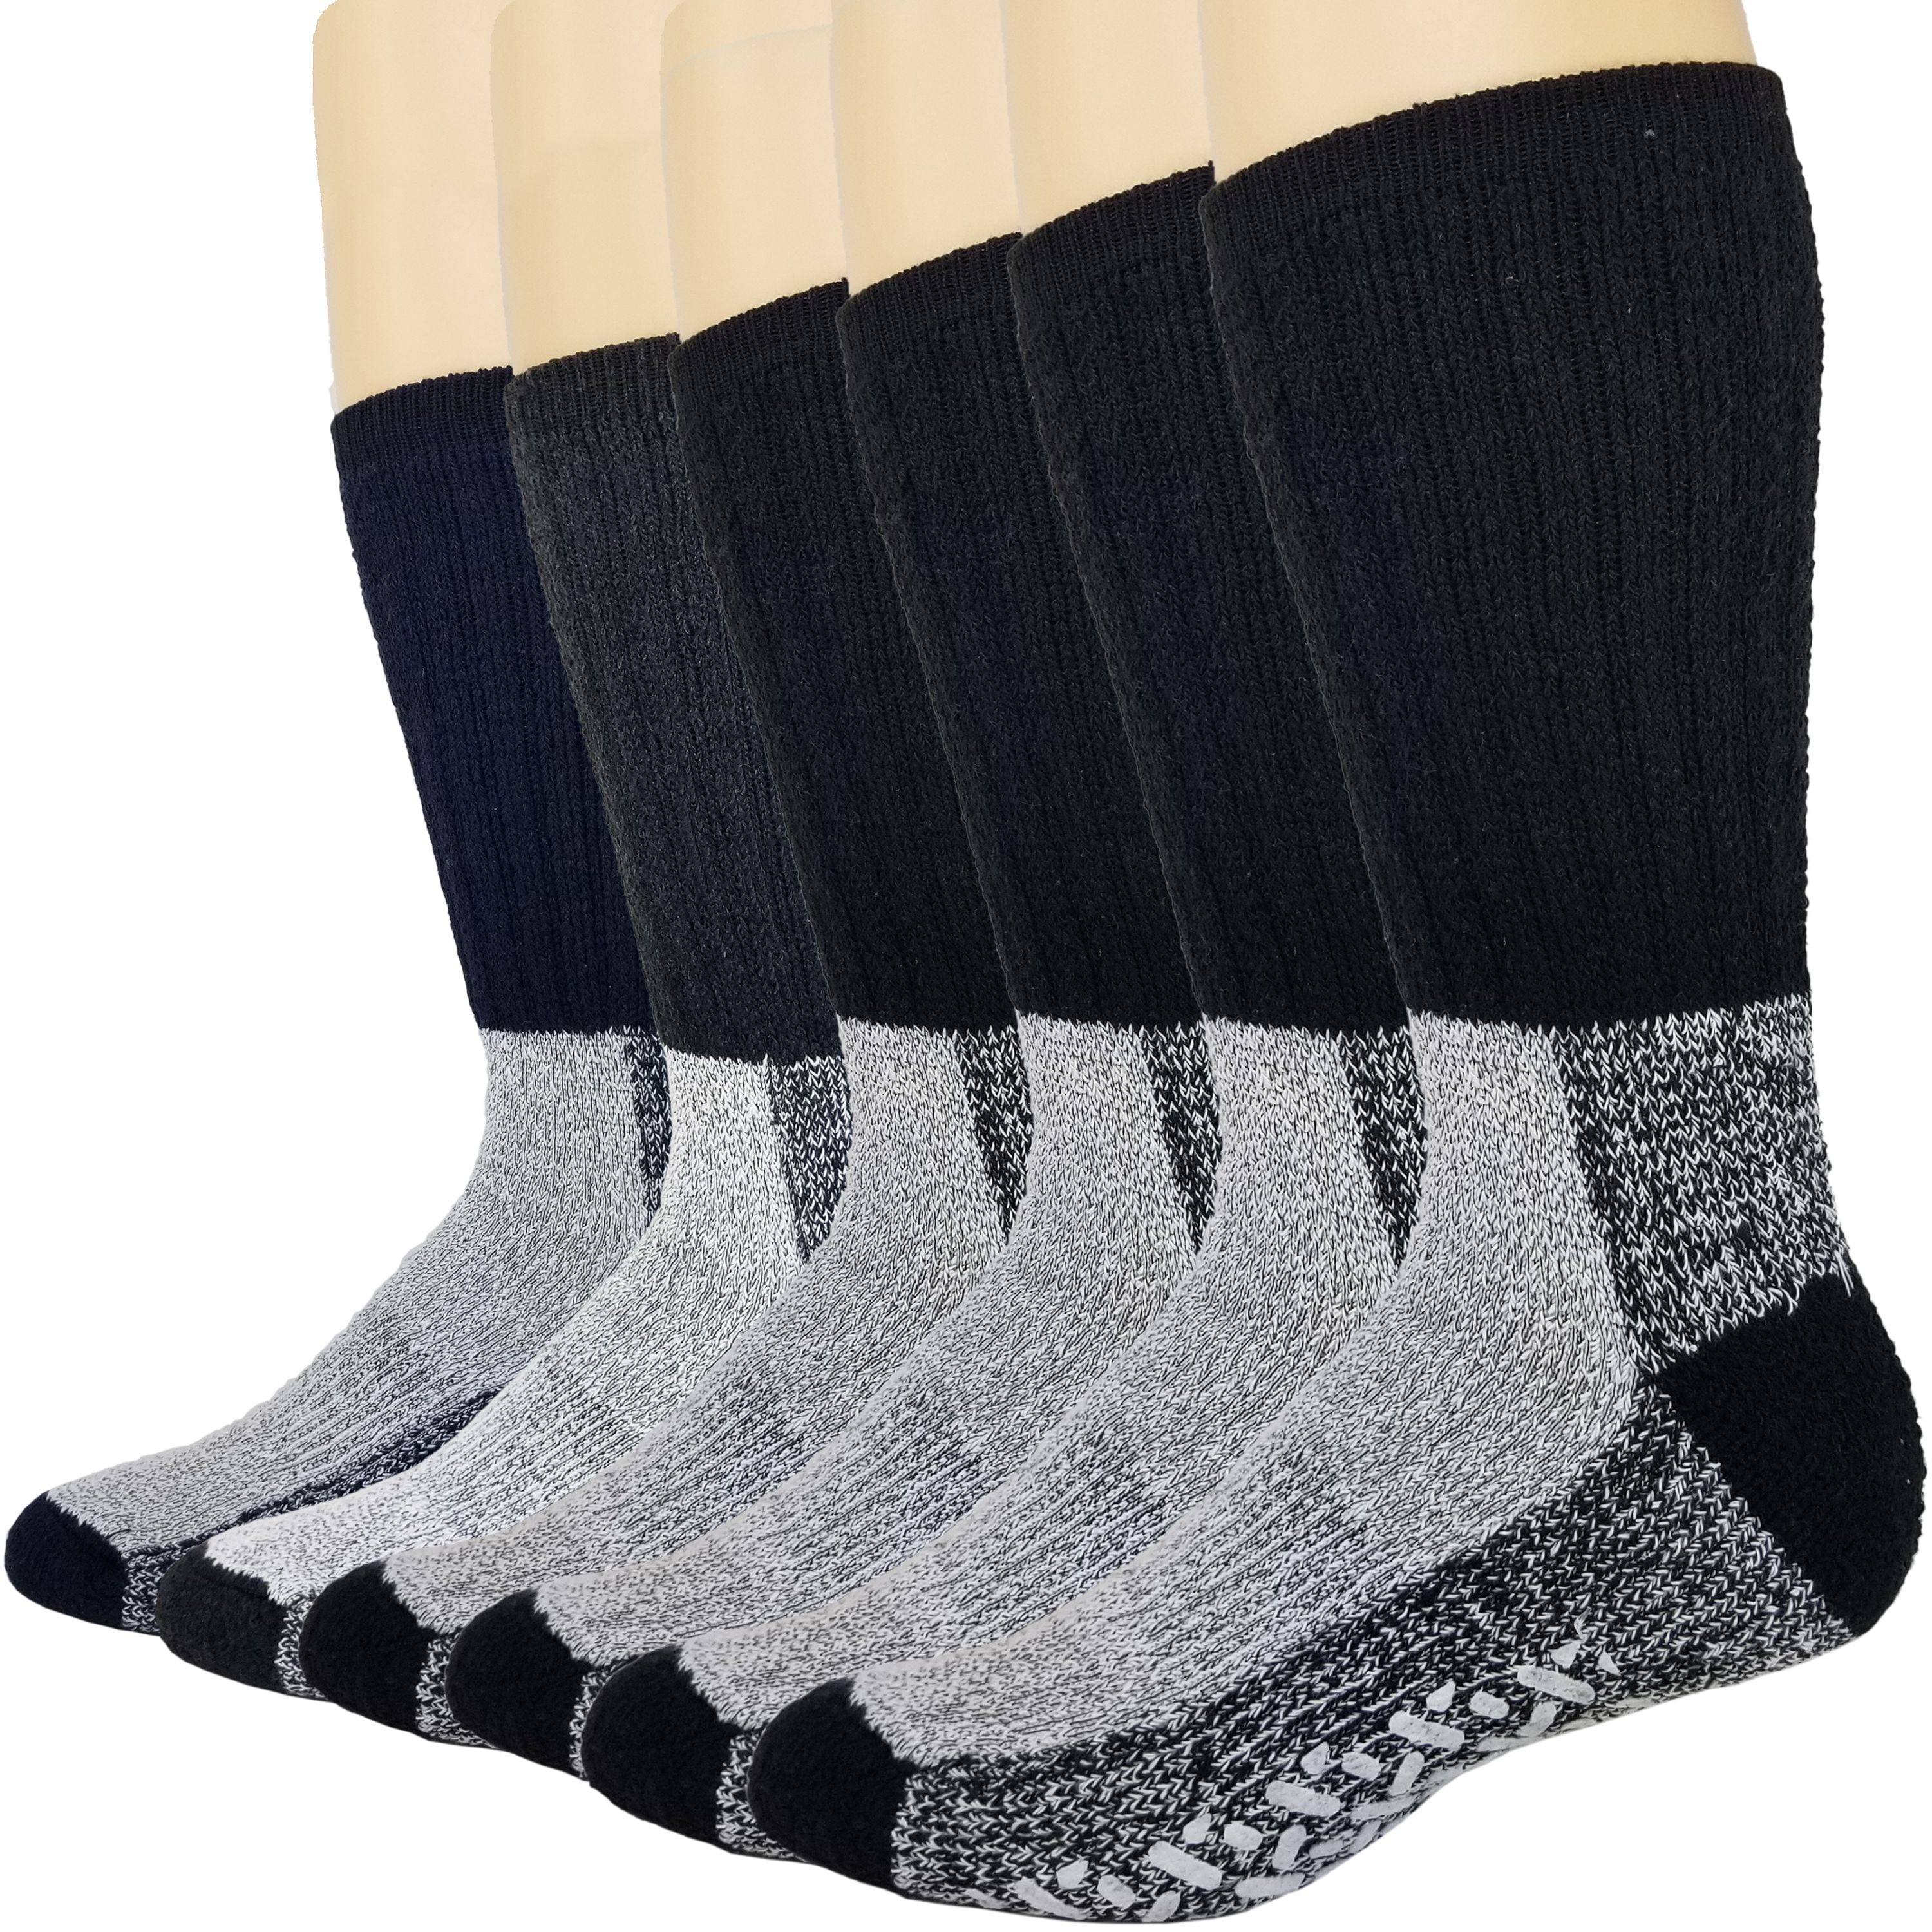 Mens 3 Pair Gentle Grip Patterned Wool Socks